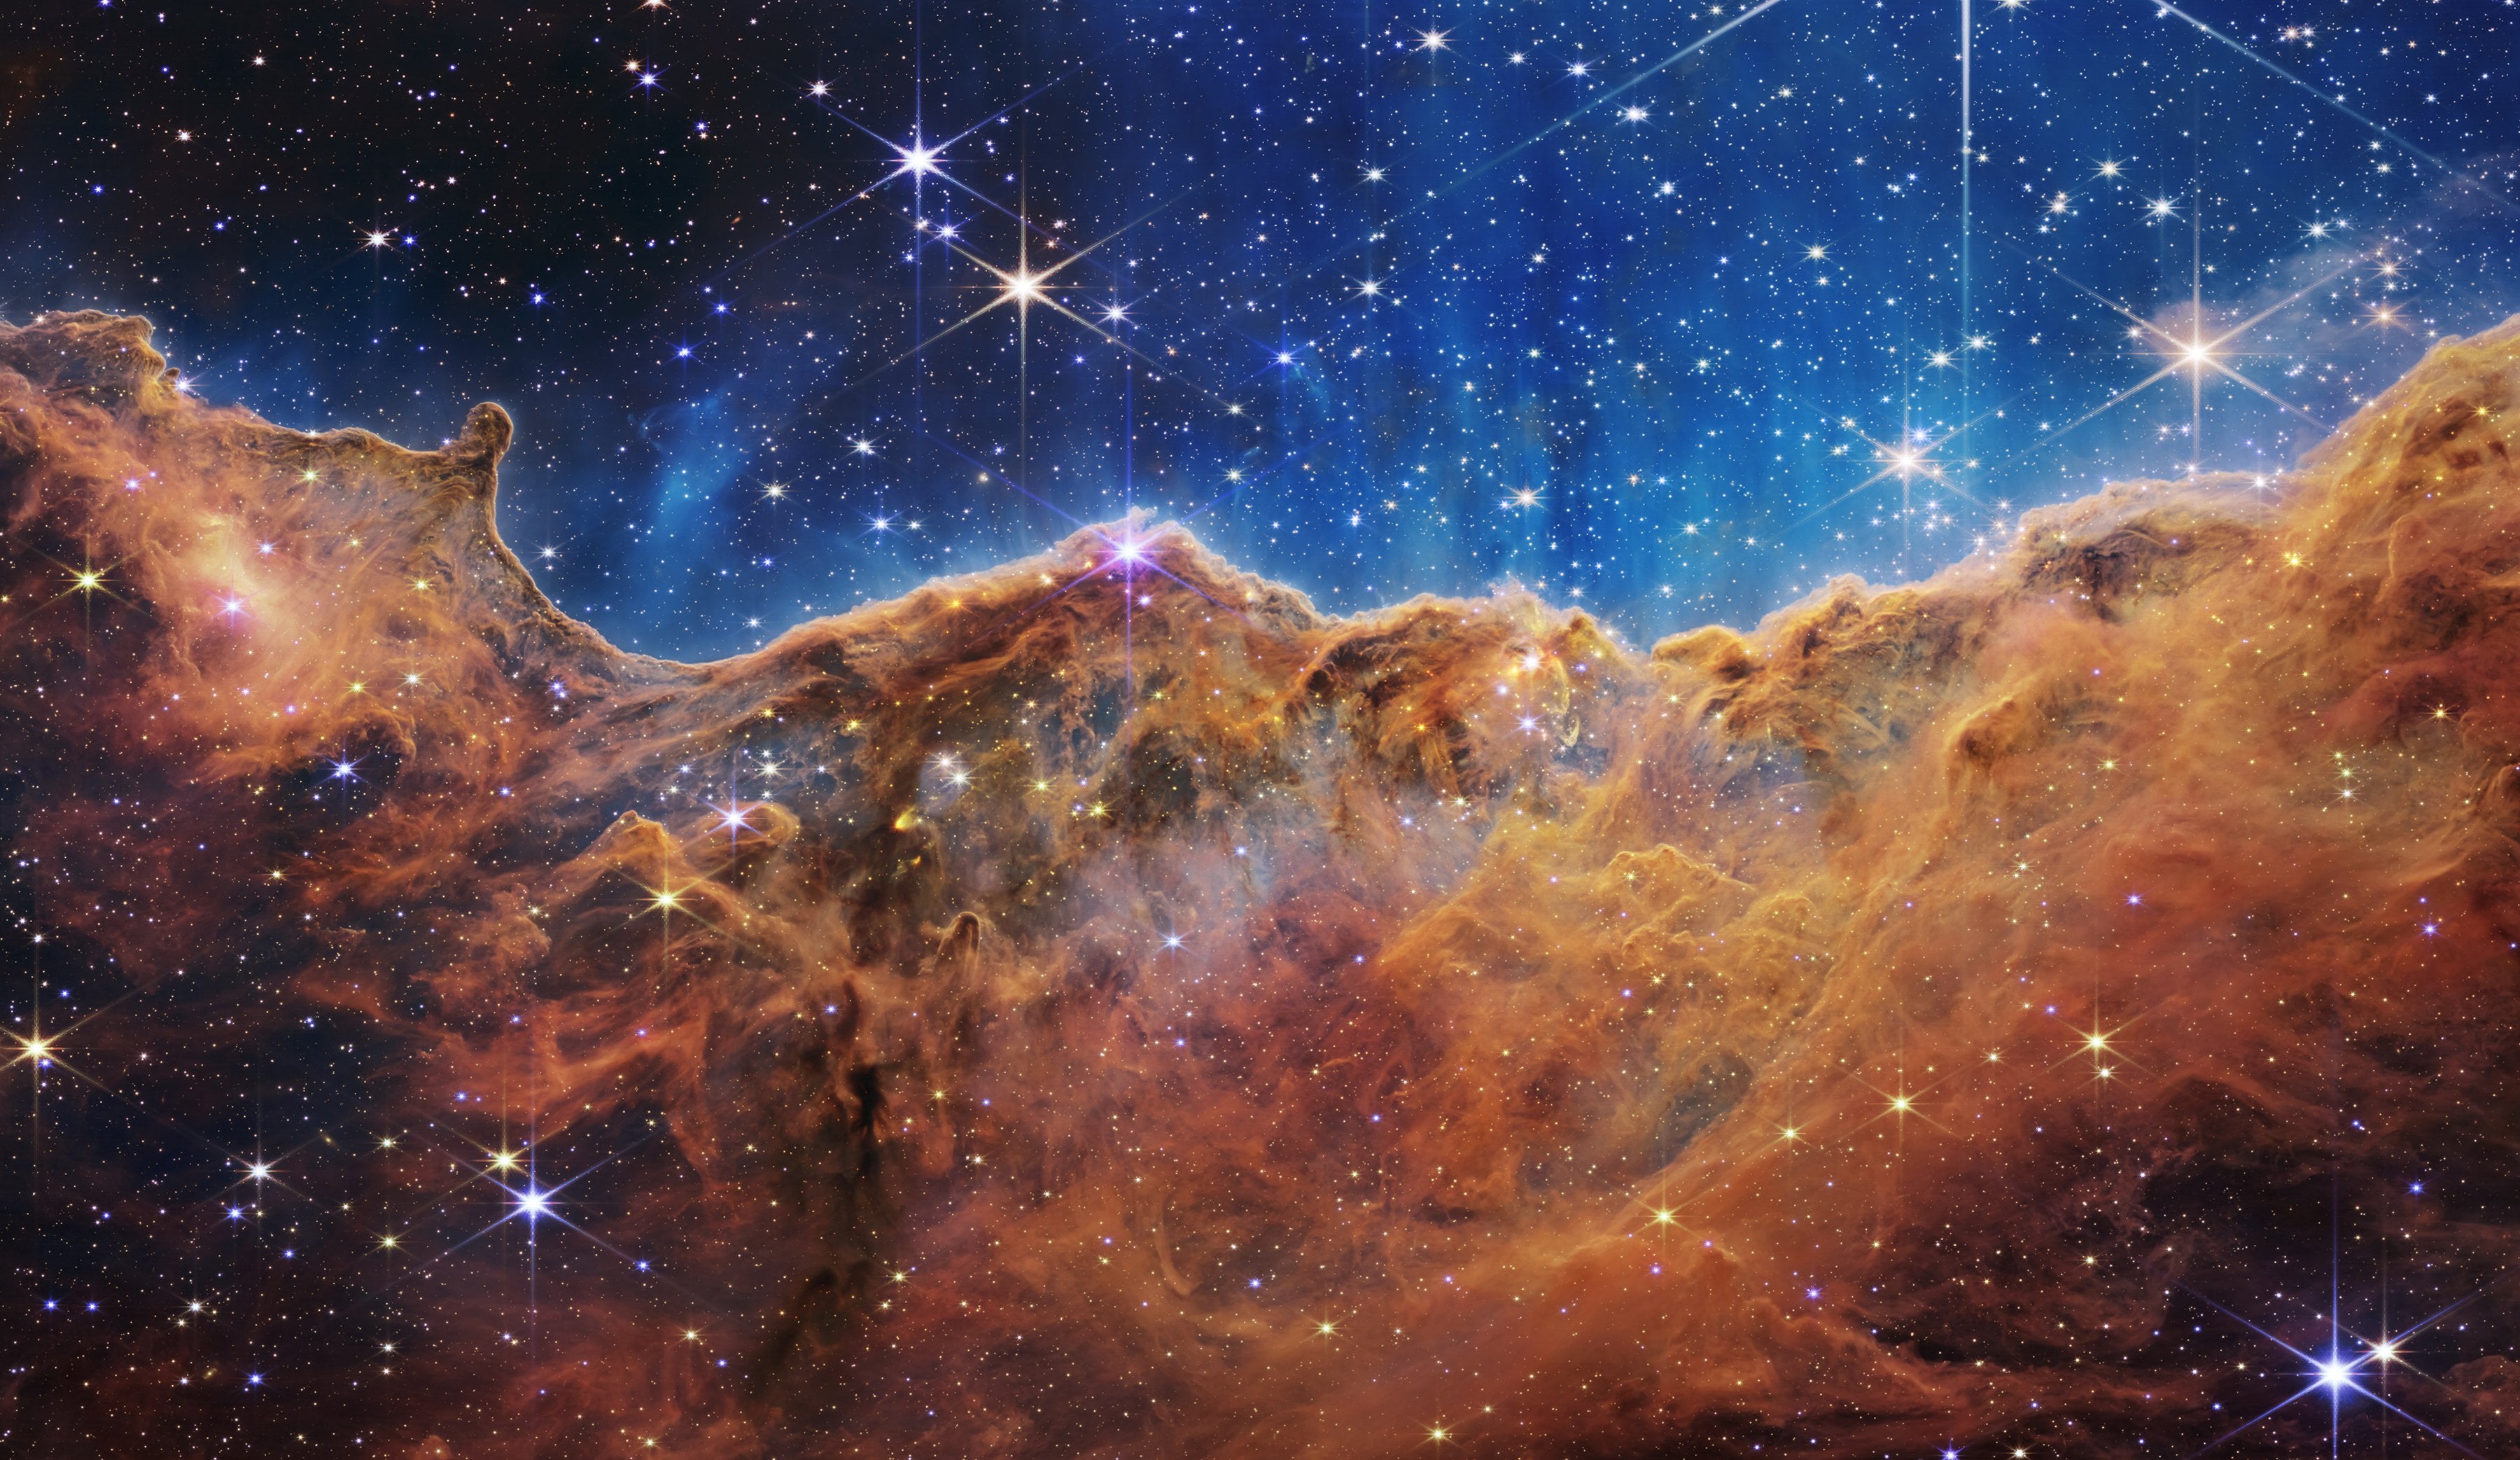 Webb’s image of Carina nebula reveals newborn stars